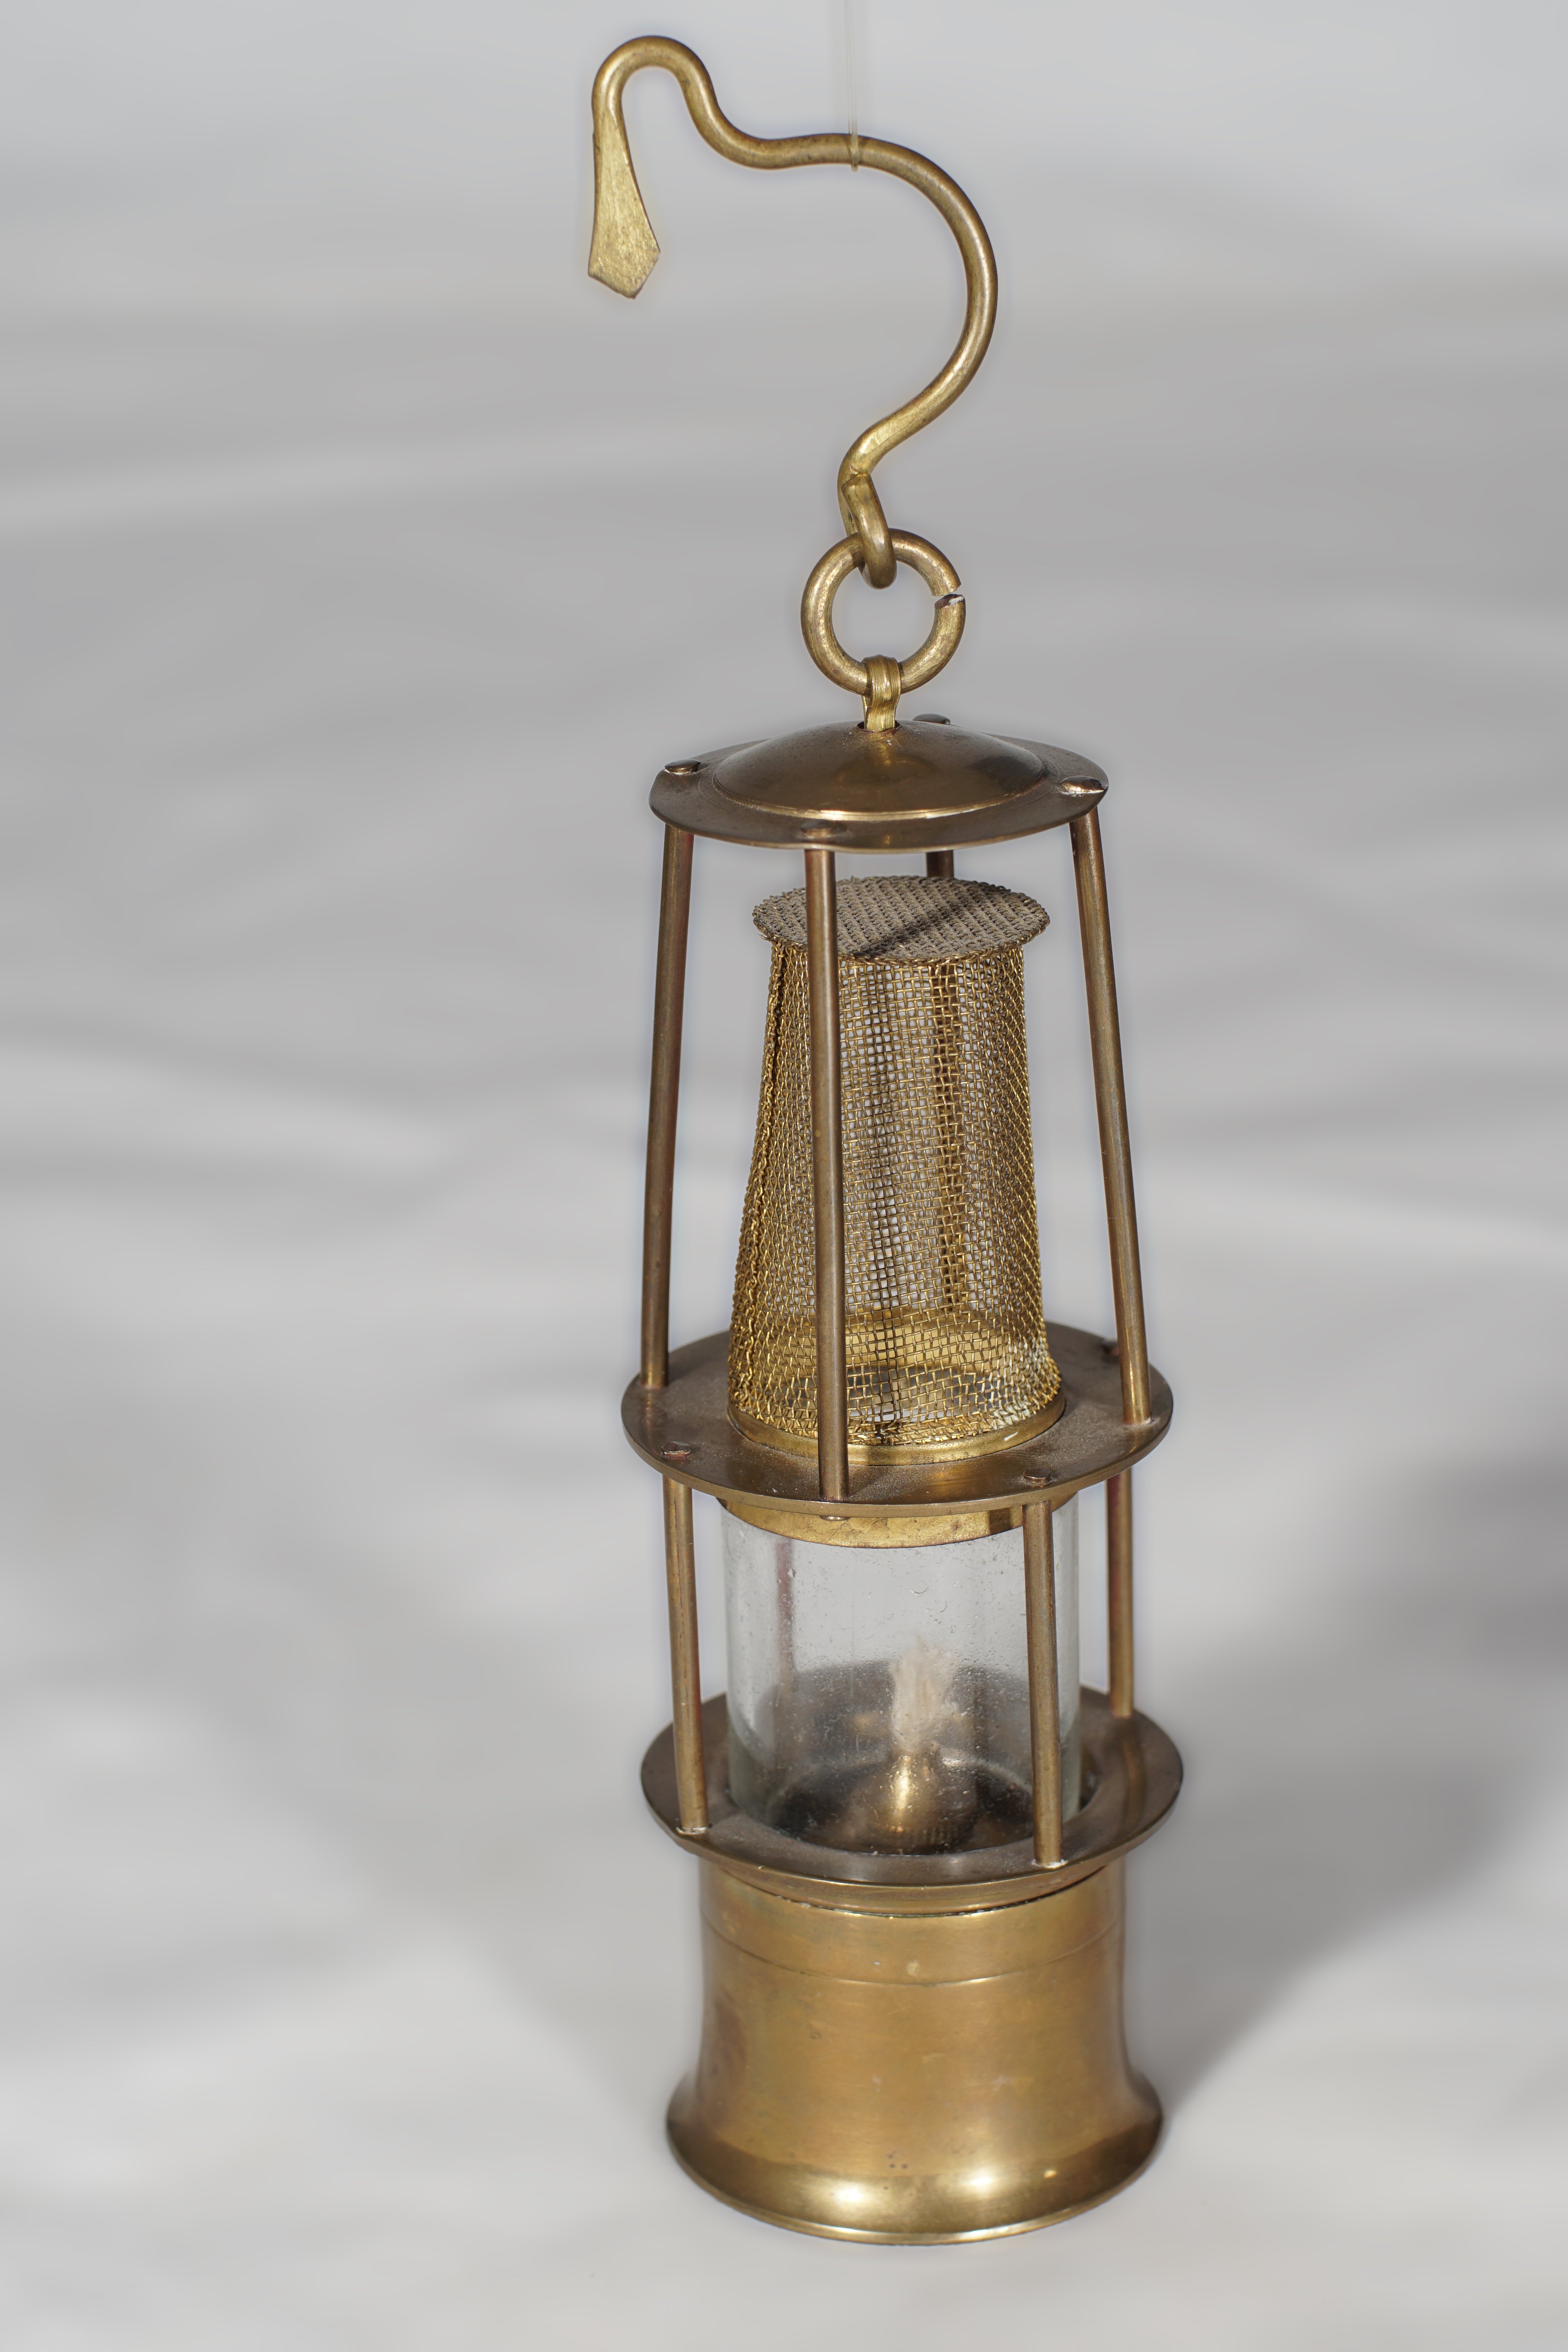 Öllämpchen in Form einer Grubensicherheitslampe (Werra-Kalibergbau-Museum, Heringen/W. CC BY-NC-SA)